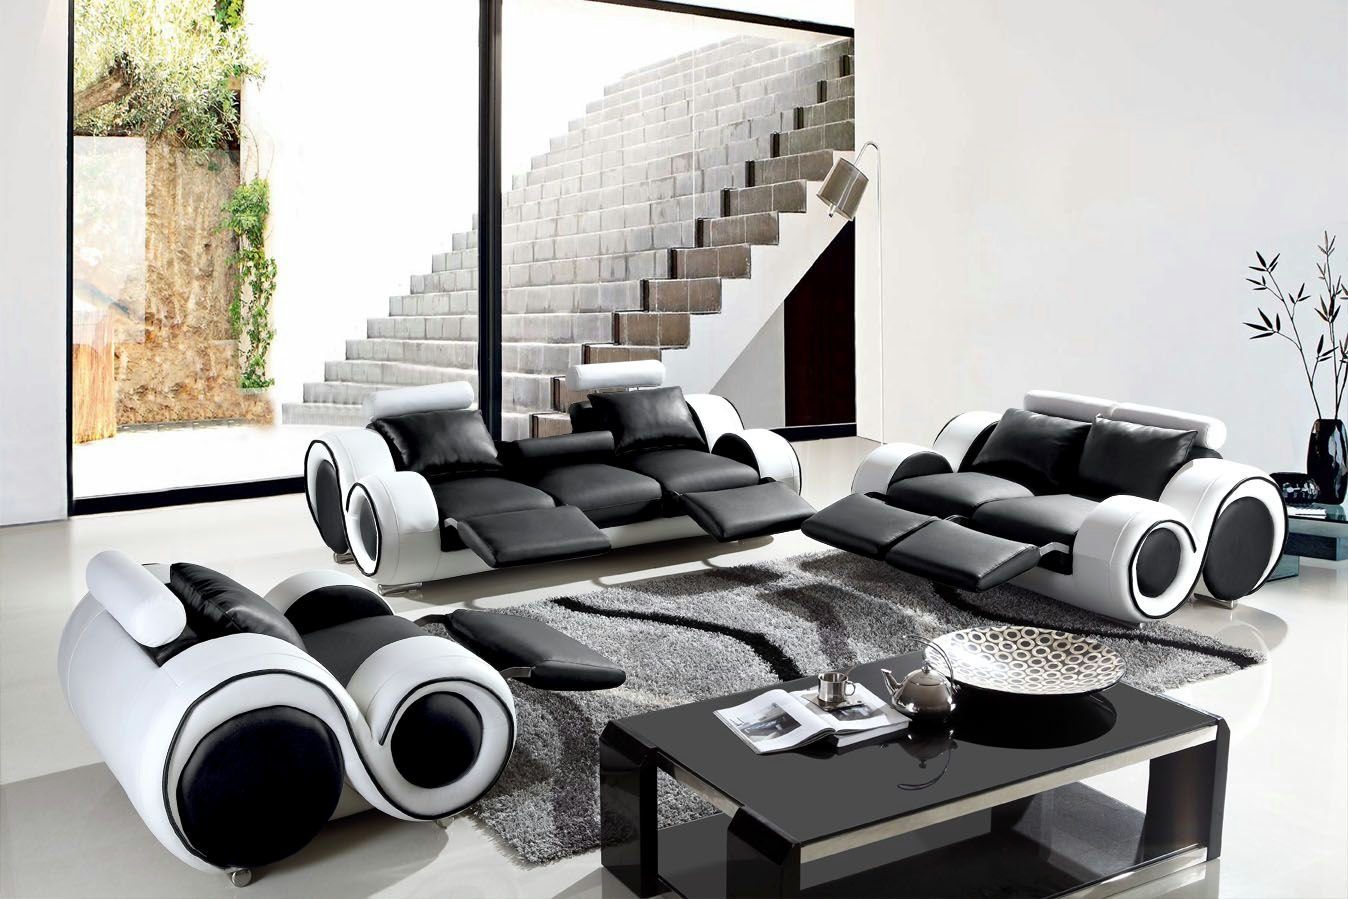 JVmoebel Textil, Sofas Sitzer Schwarz/Weiß Moderne Set Made Polster in Europe Sofas Sofa Design Couchen 3+2+1